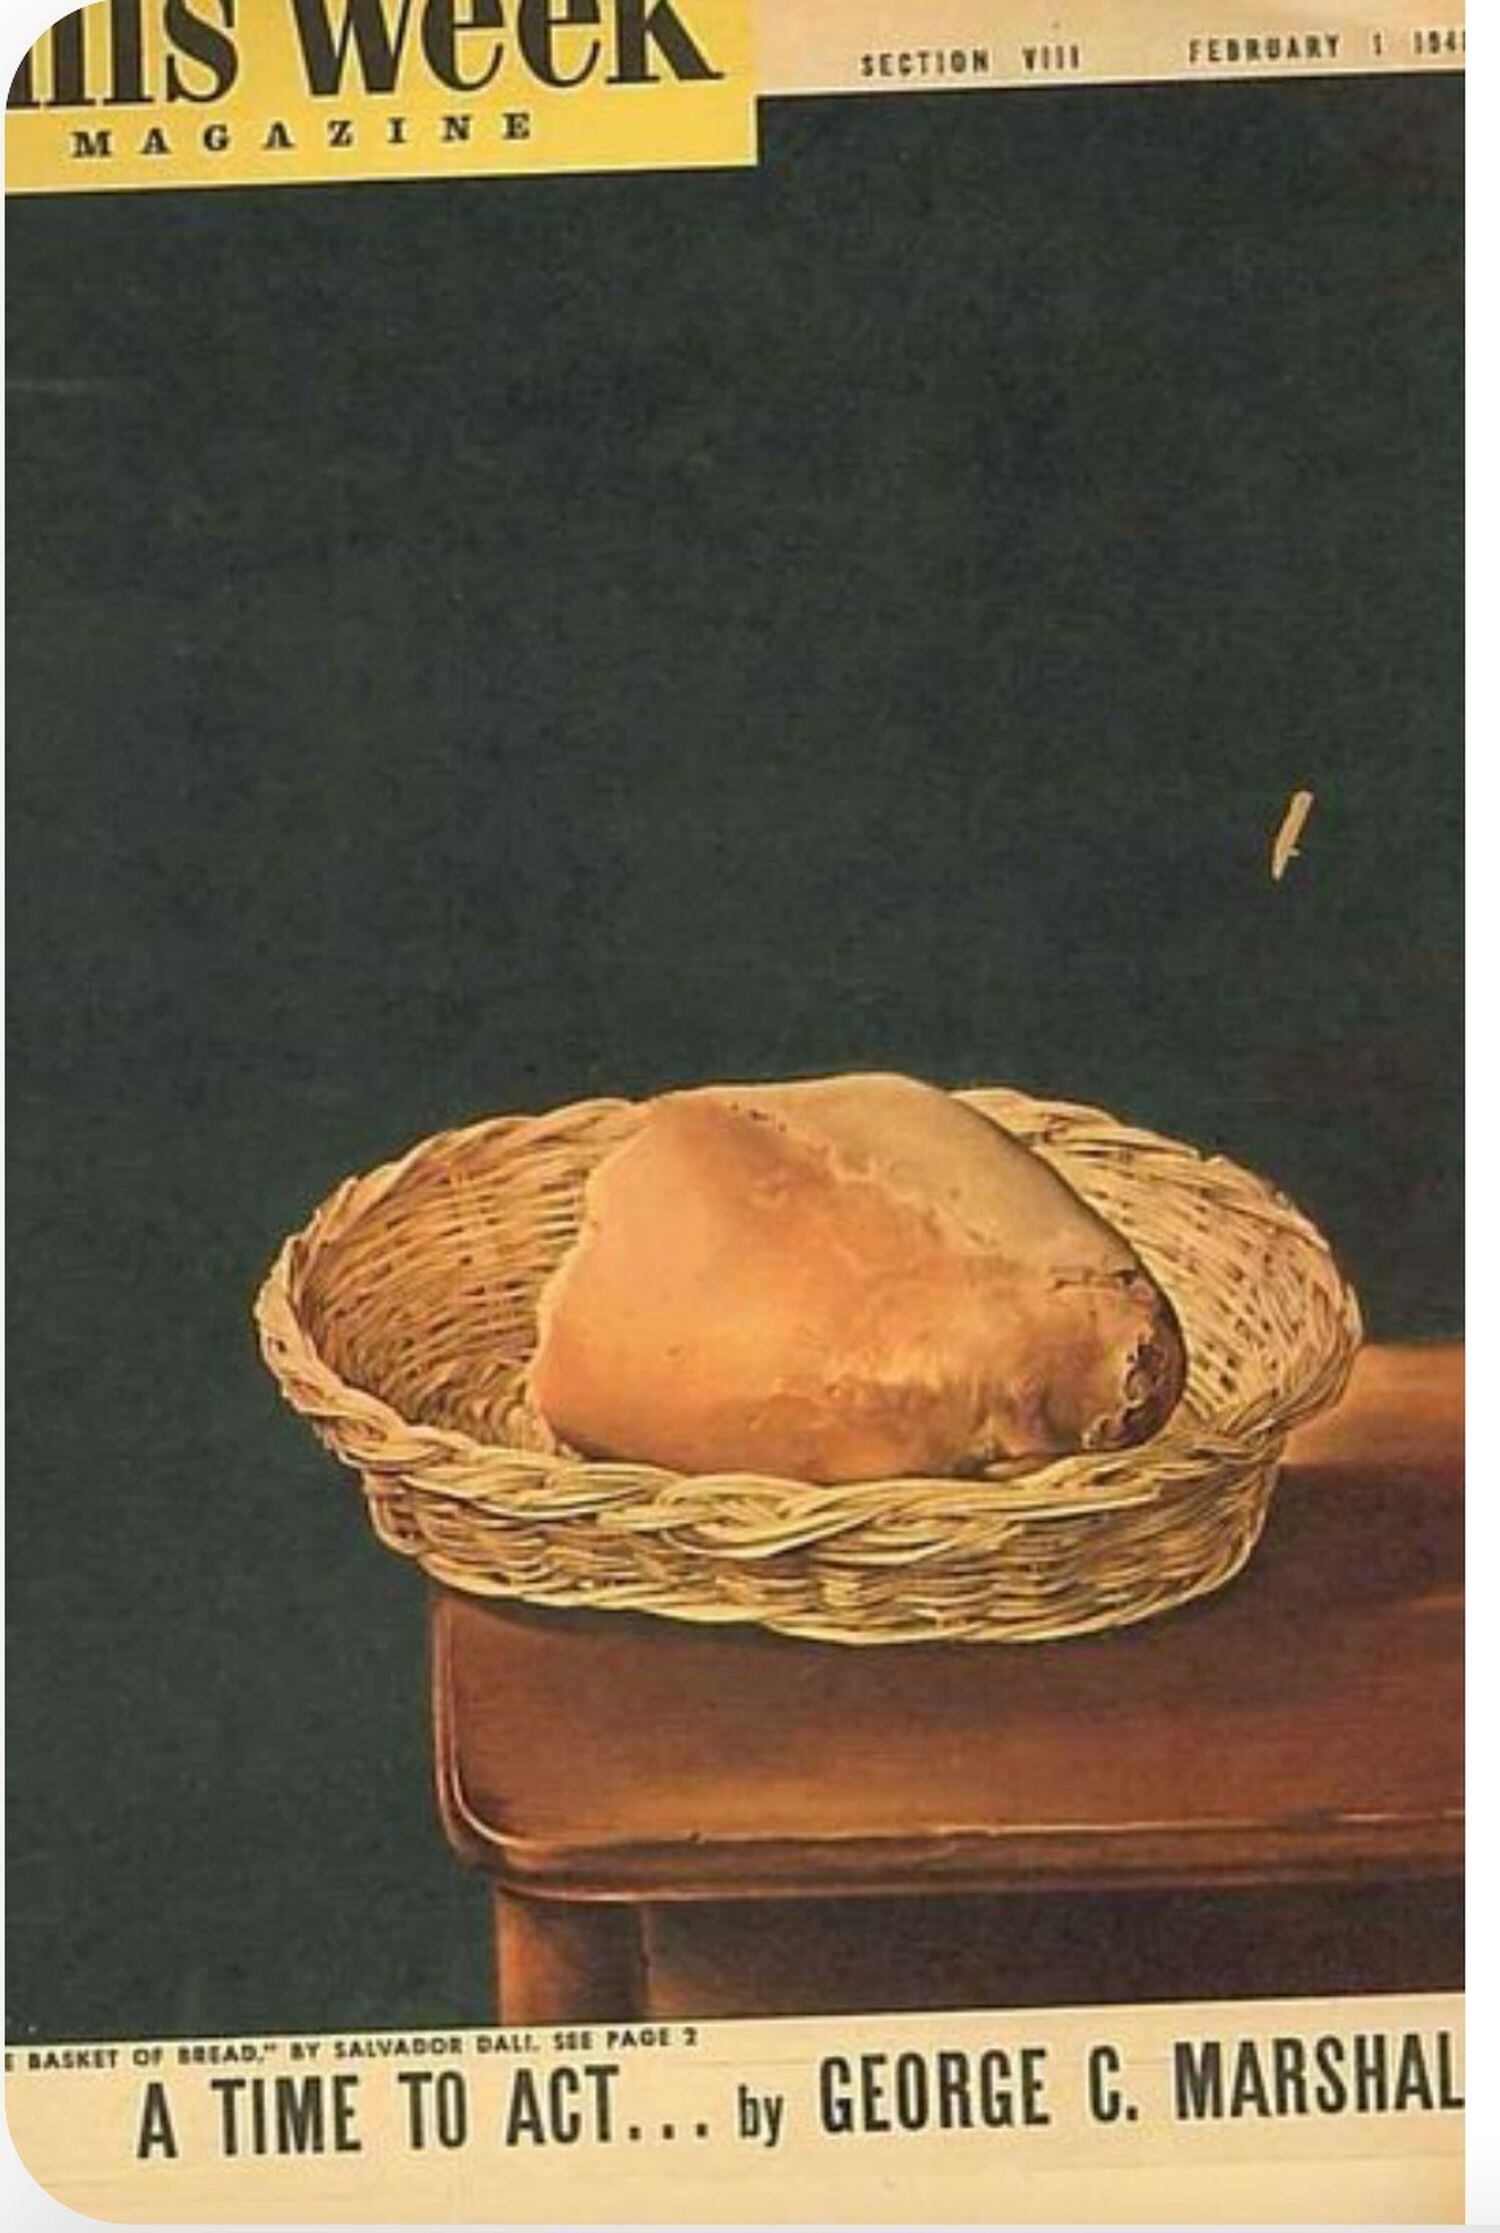 Capa da revista ‘The Week Magazine’ de fevereiro de 1948 com ‘A Cesta de Pão’, obra de Dalí, para anunciar o Plano Marshall.